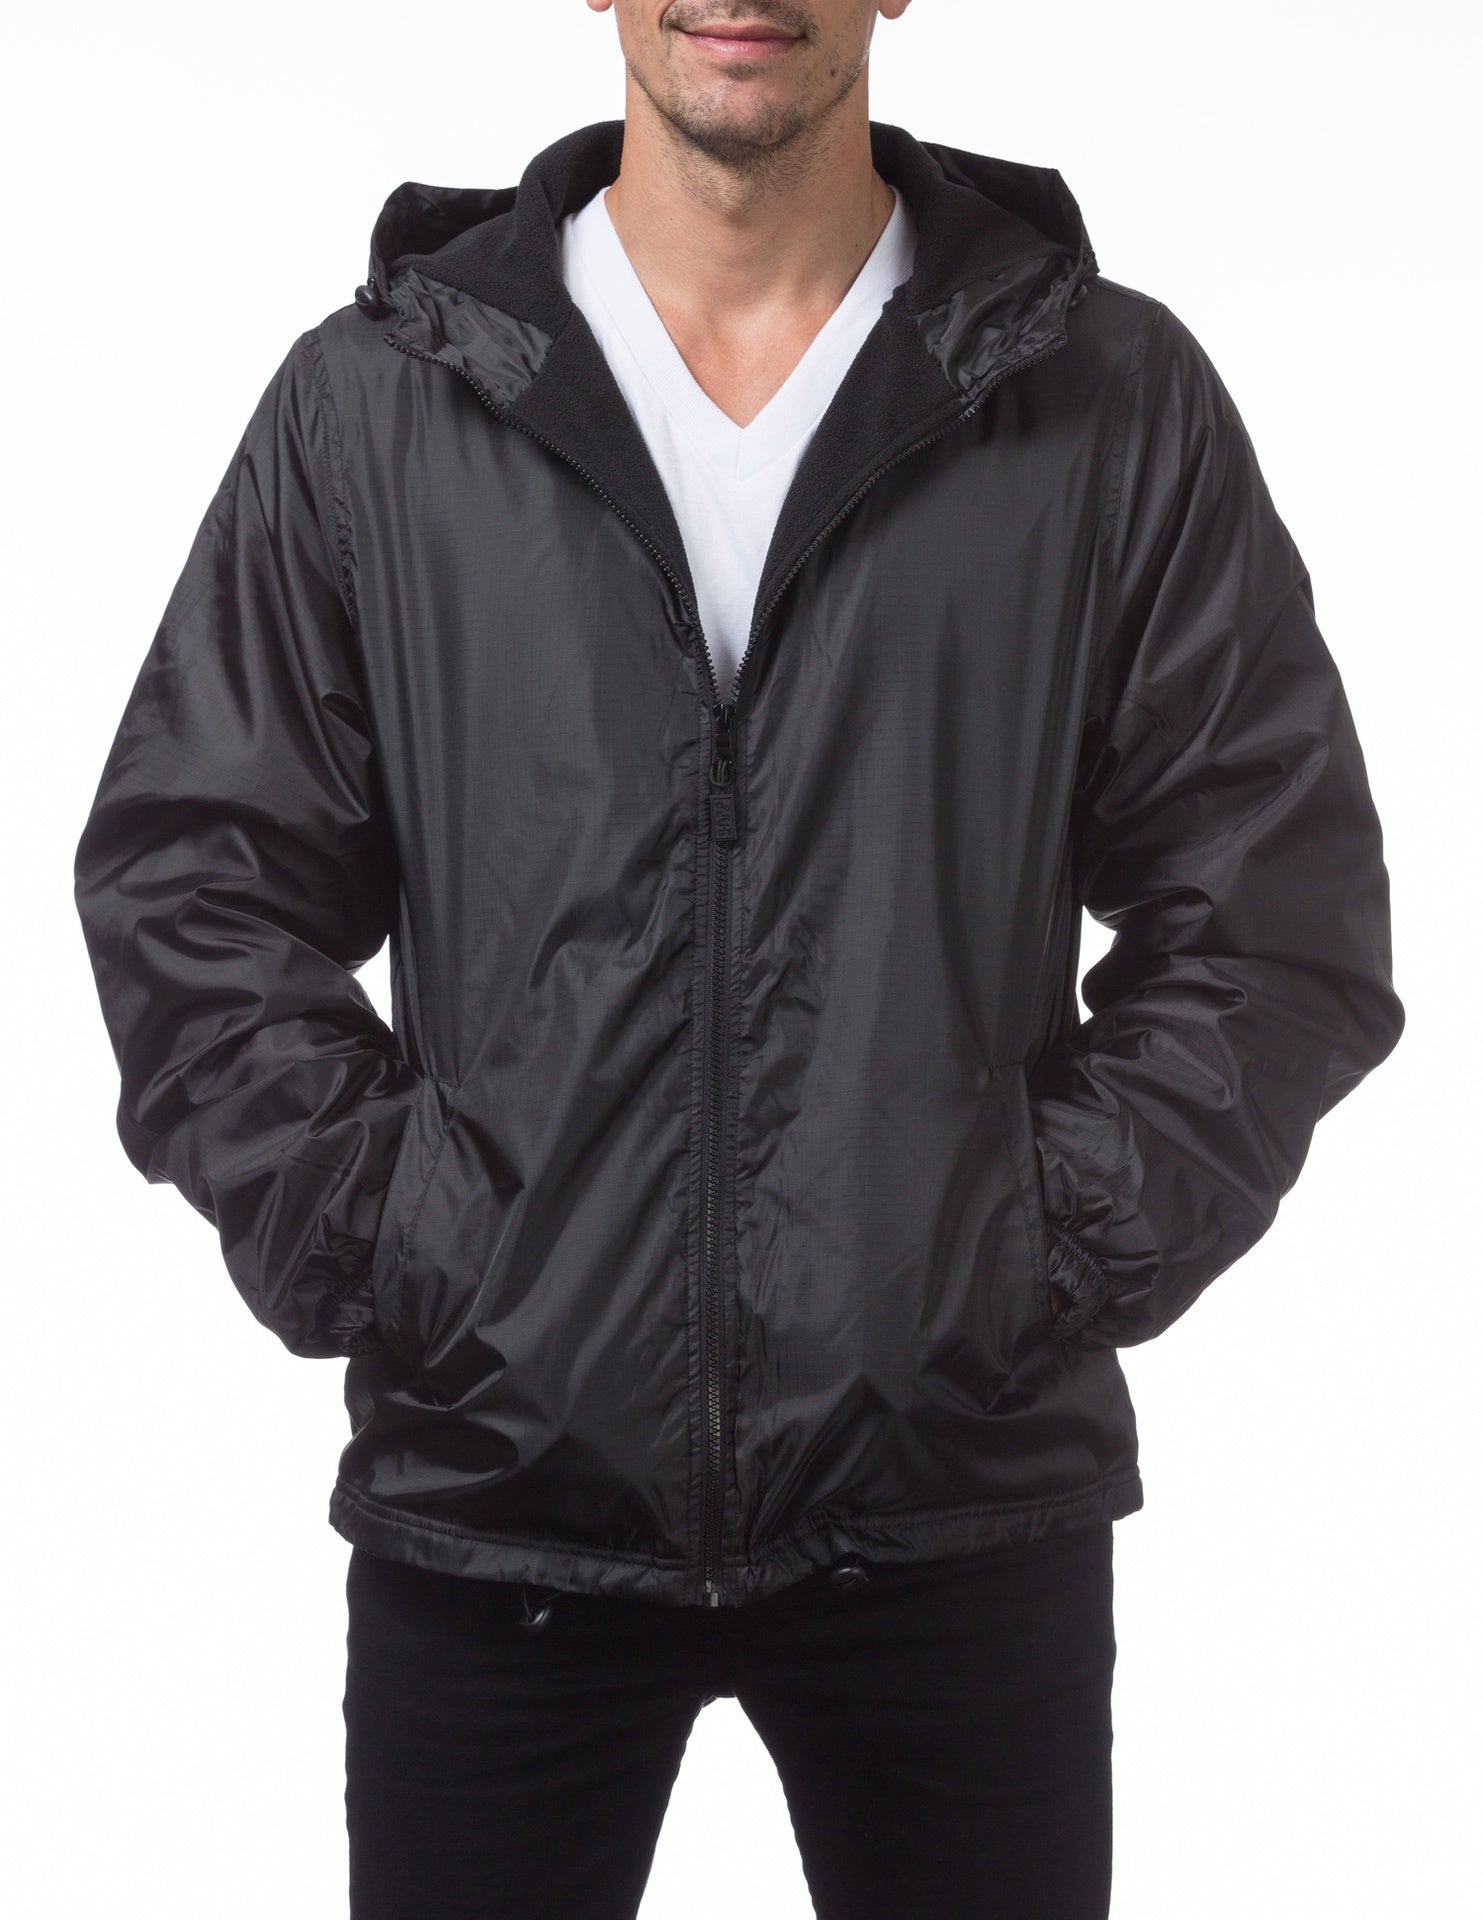 Pro Club Fleece Lined Windbreaker Jacket - BLACK